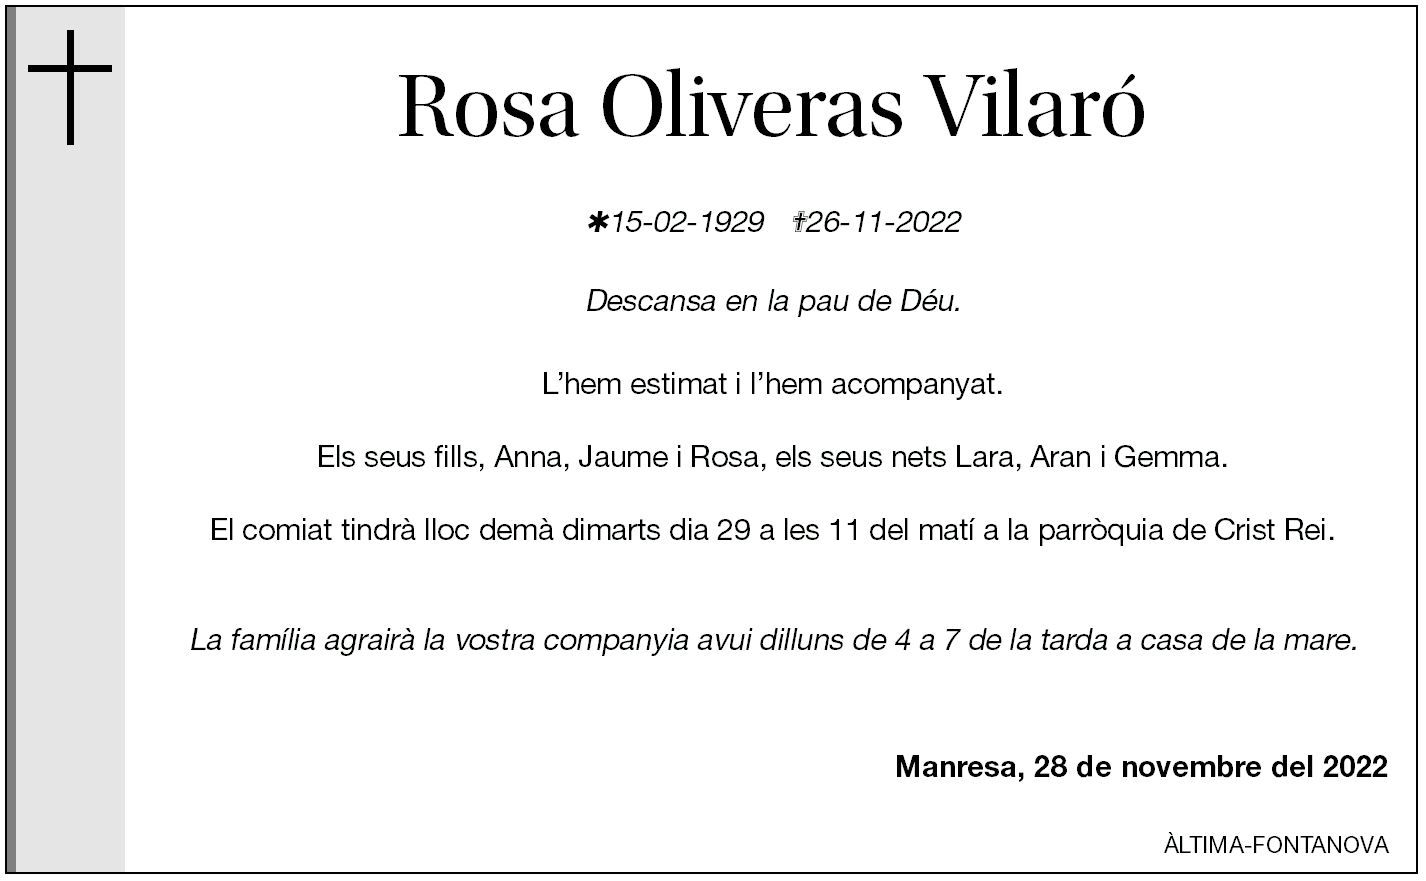 Rosa Oliveras